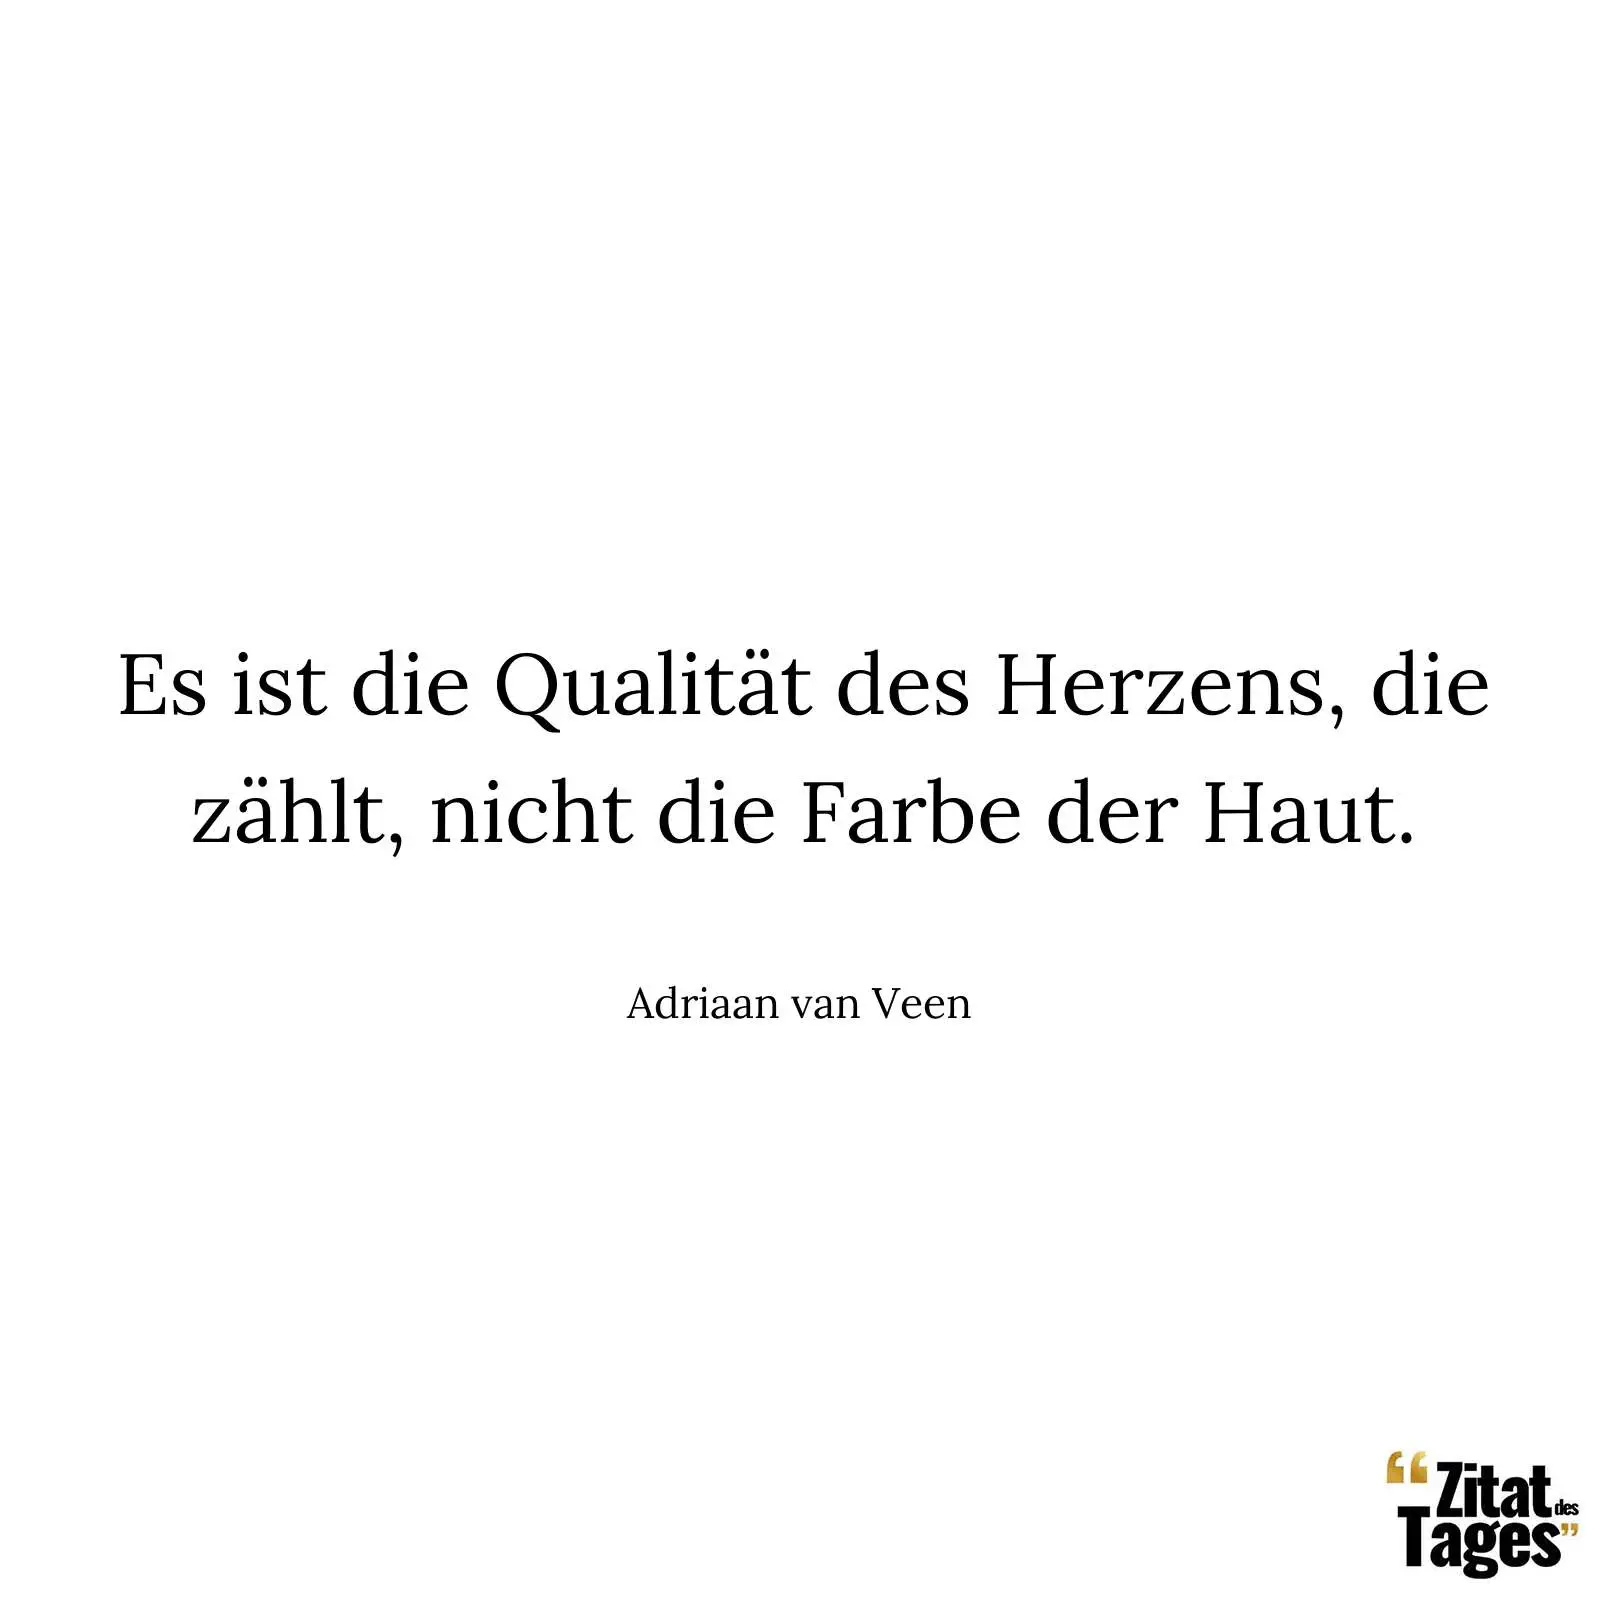 Es ist die Qualität des Herzens, die zählt, nicht die Farbe der Haut. - Adriaan van Veen